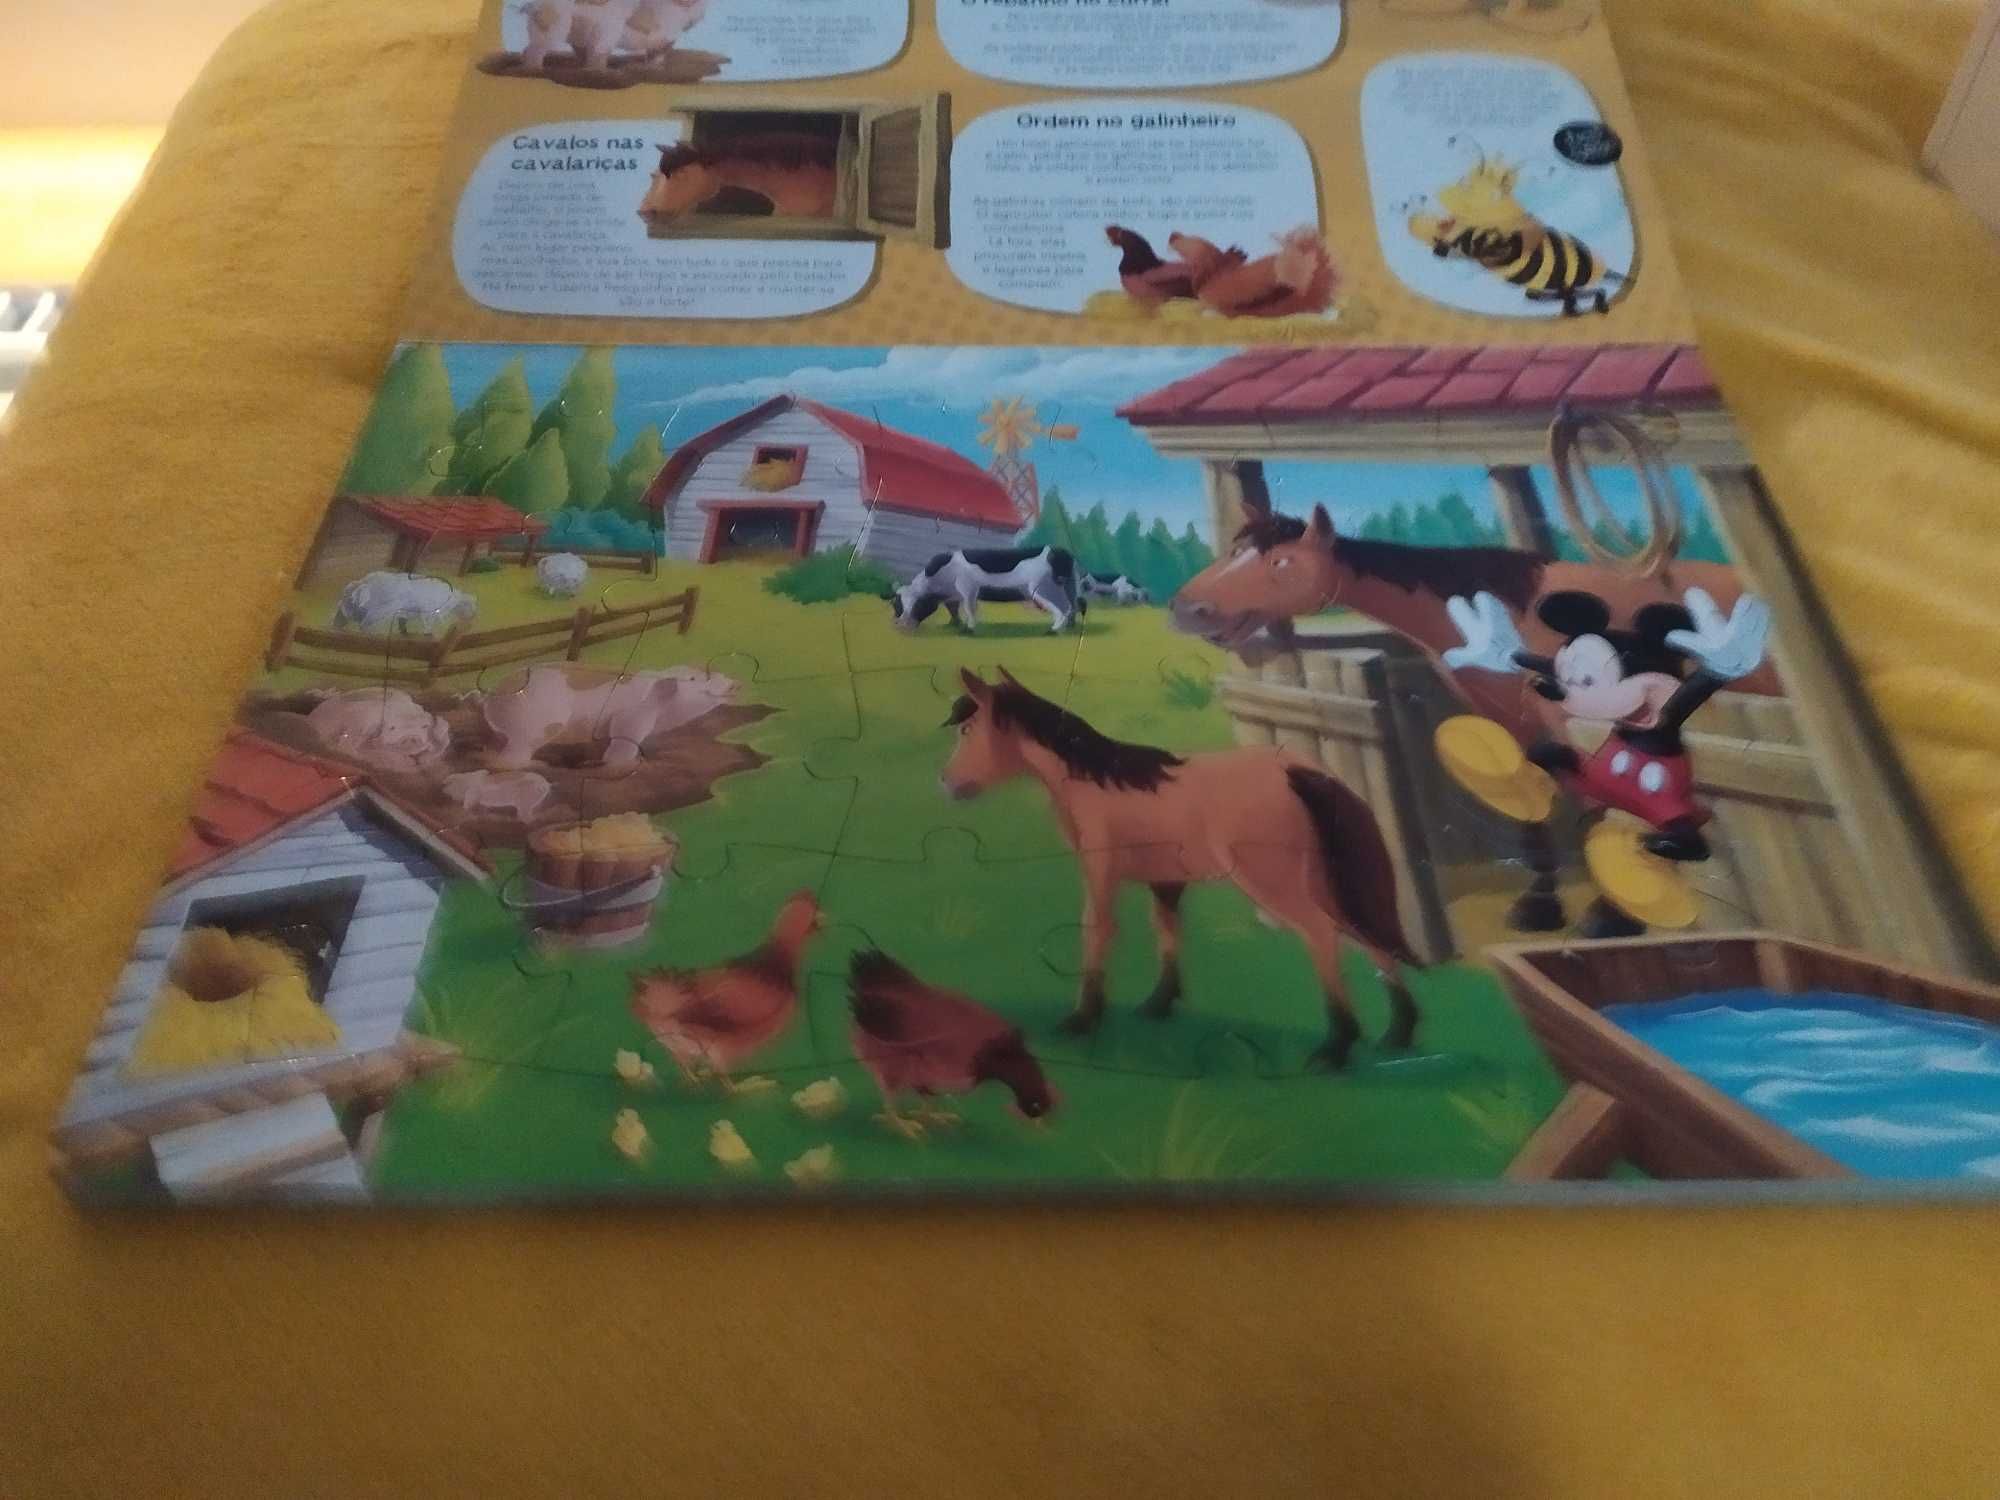 Livro e Puzzles - O Mundo Maravilhoso da Quinta - Disney (novo)